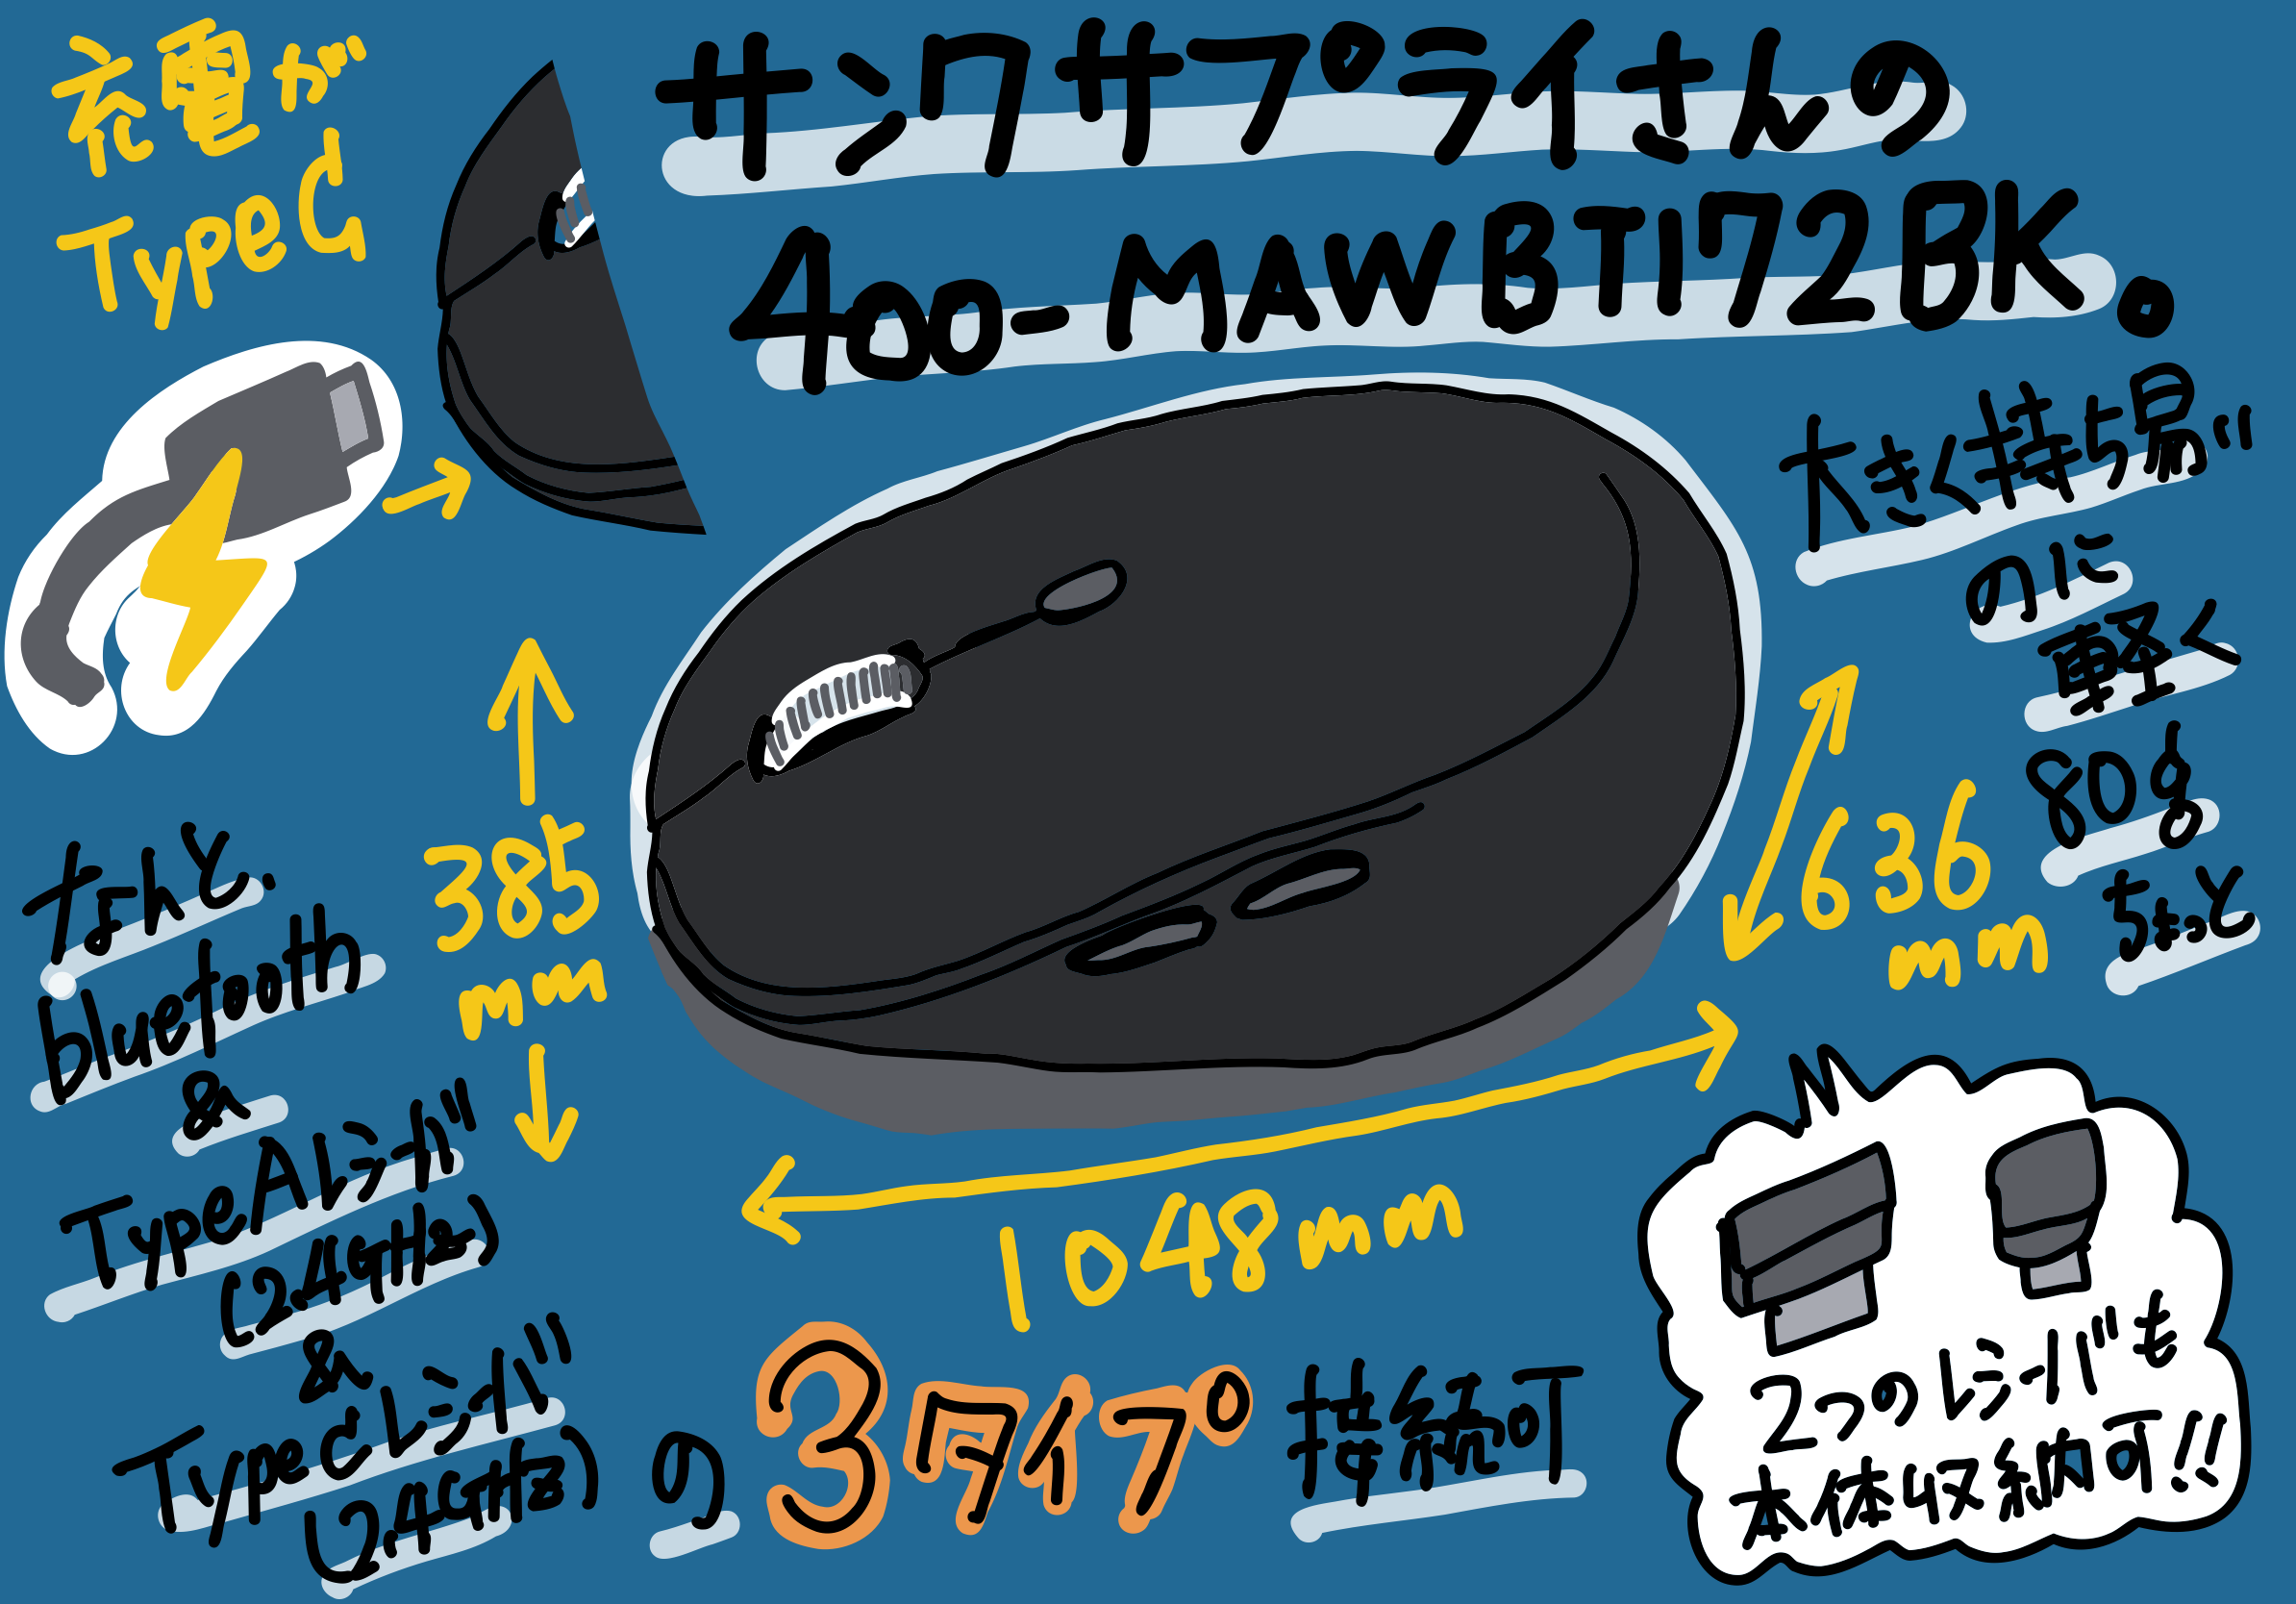 サンワサプライ 400-MAWBT172BK マウスレビュー